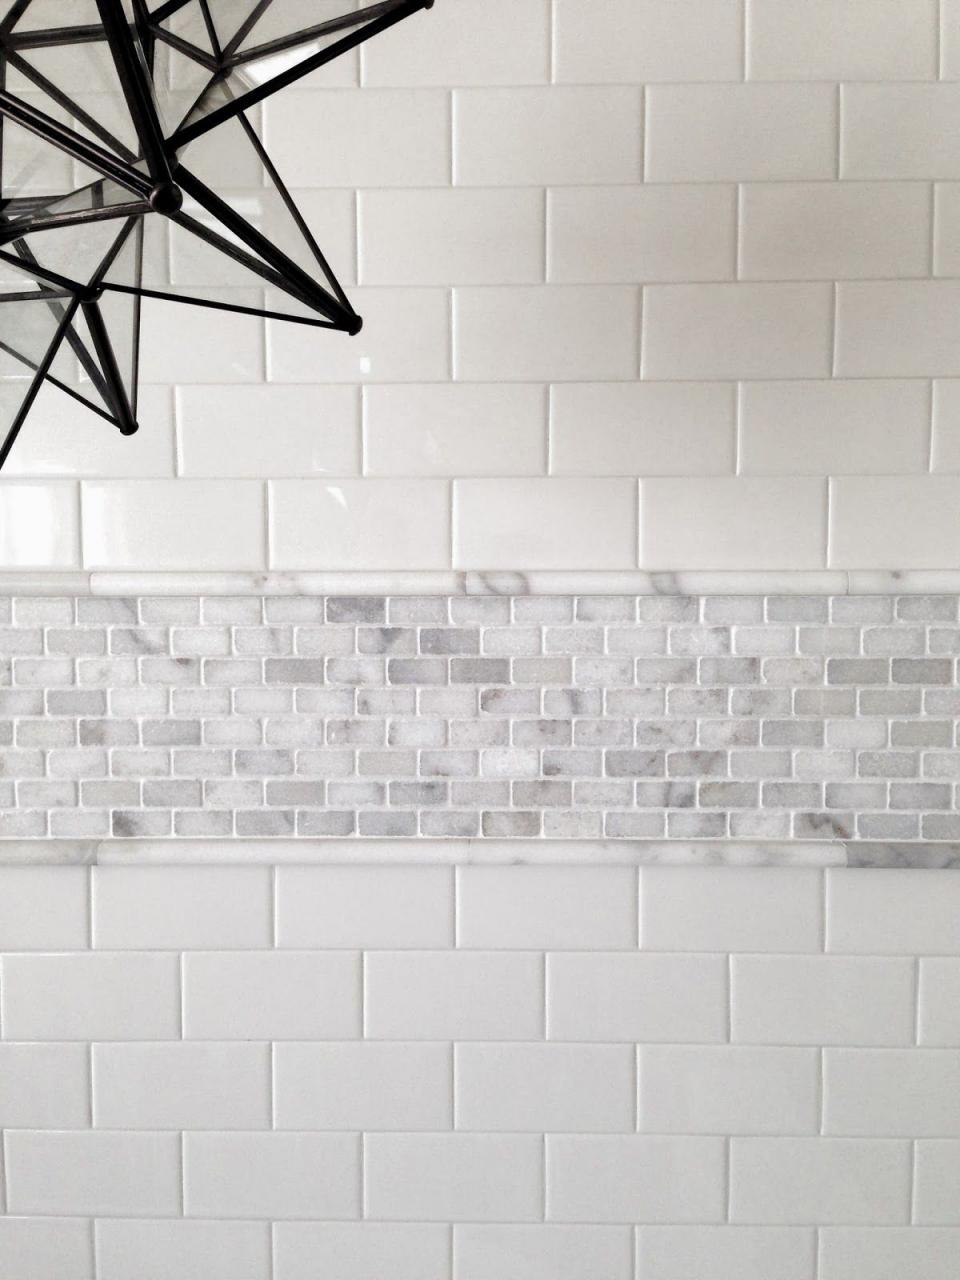 Border Tiles For Bathroom Ideas on Foter